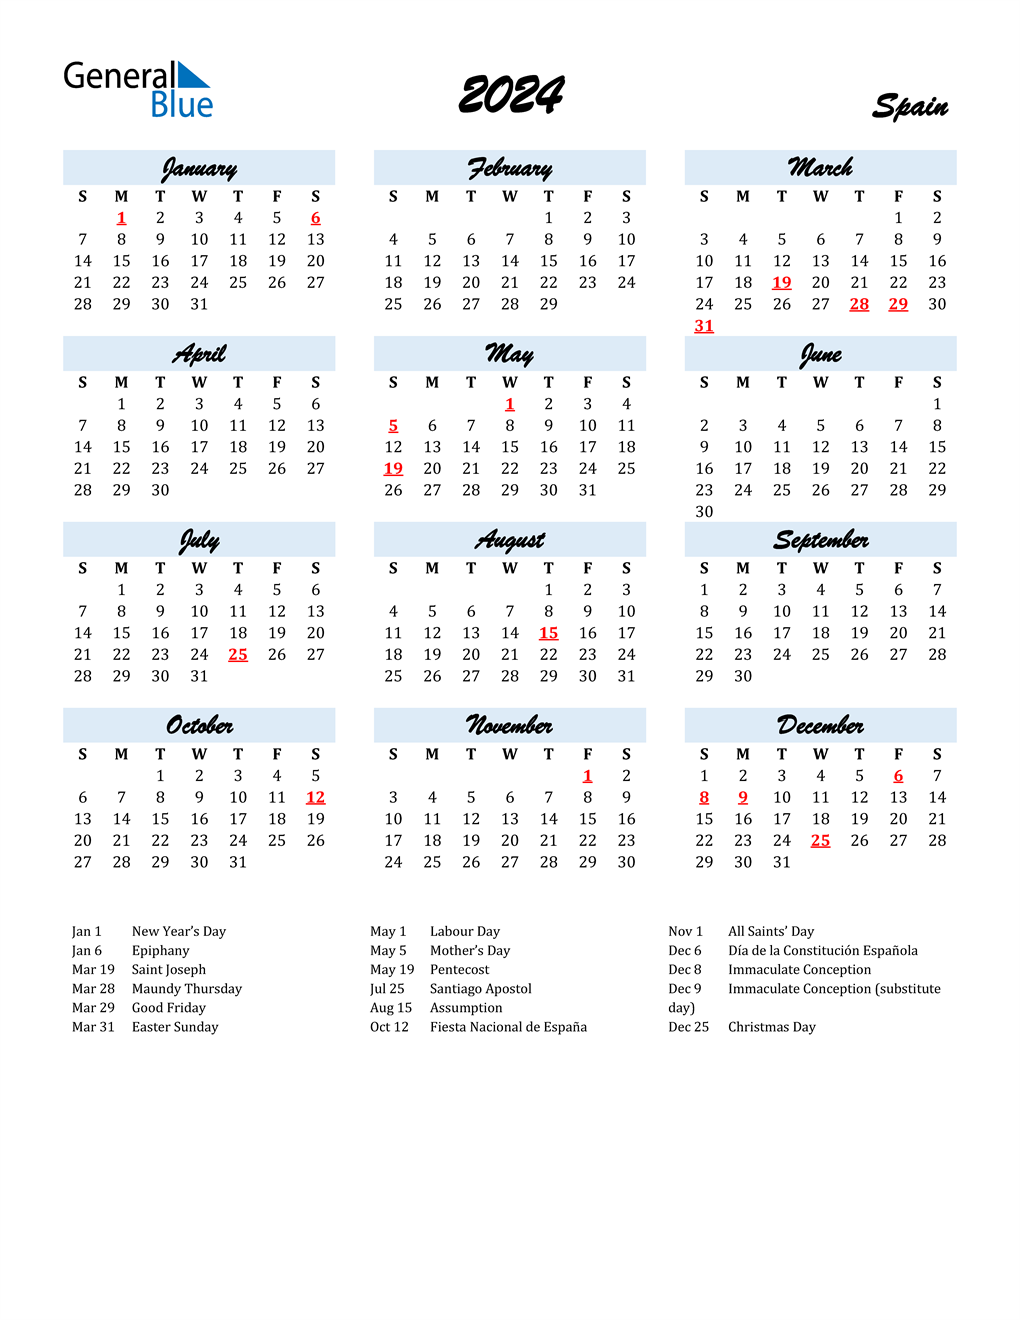 2024 Spain Calendar with Holidays